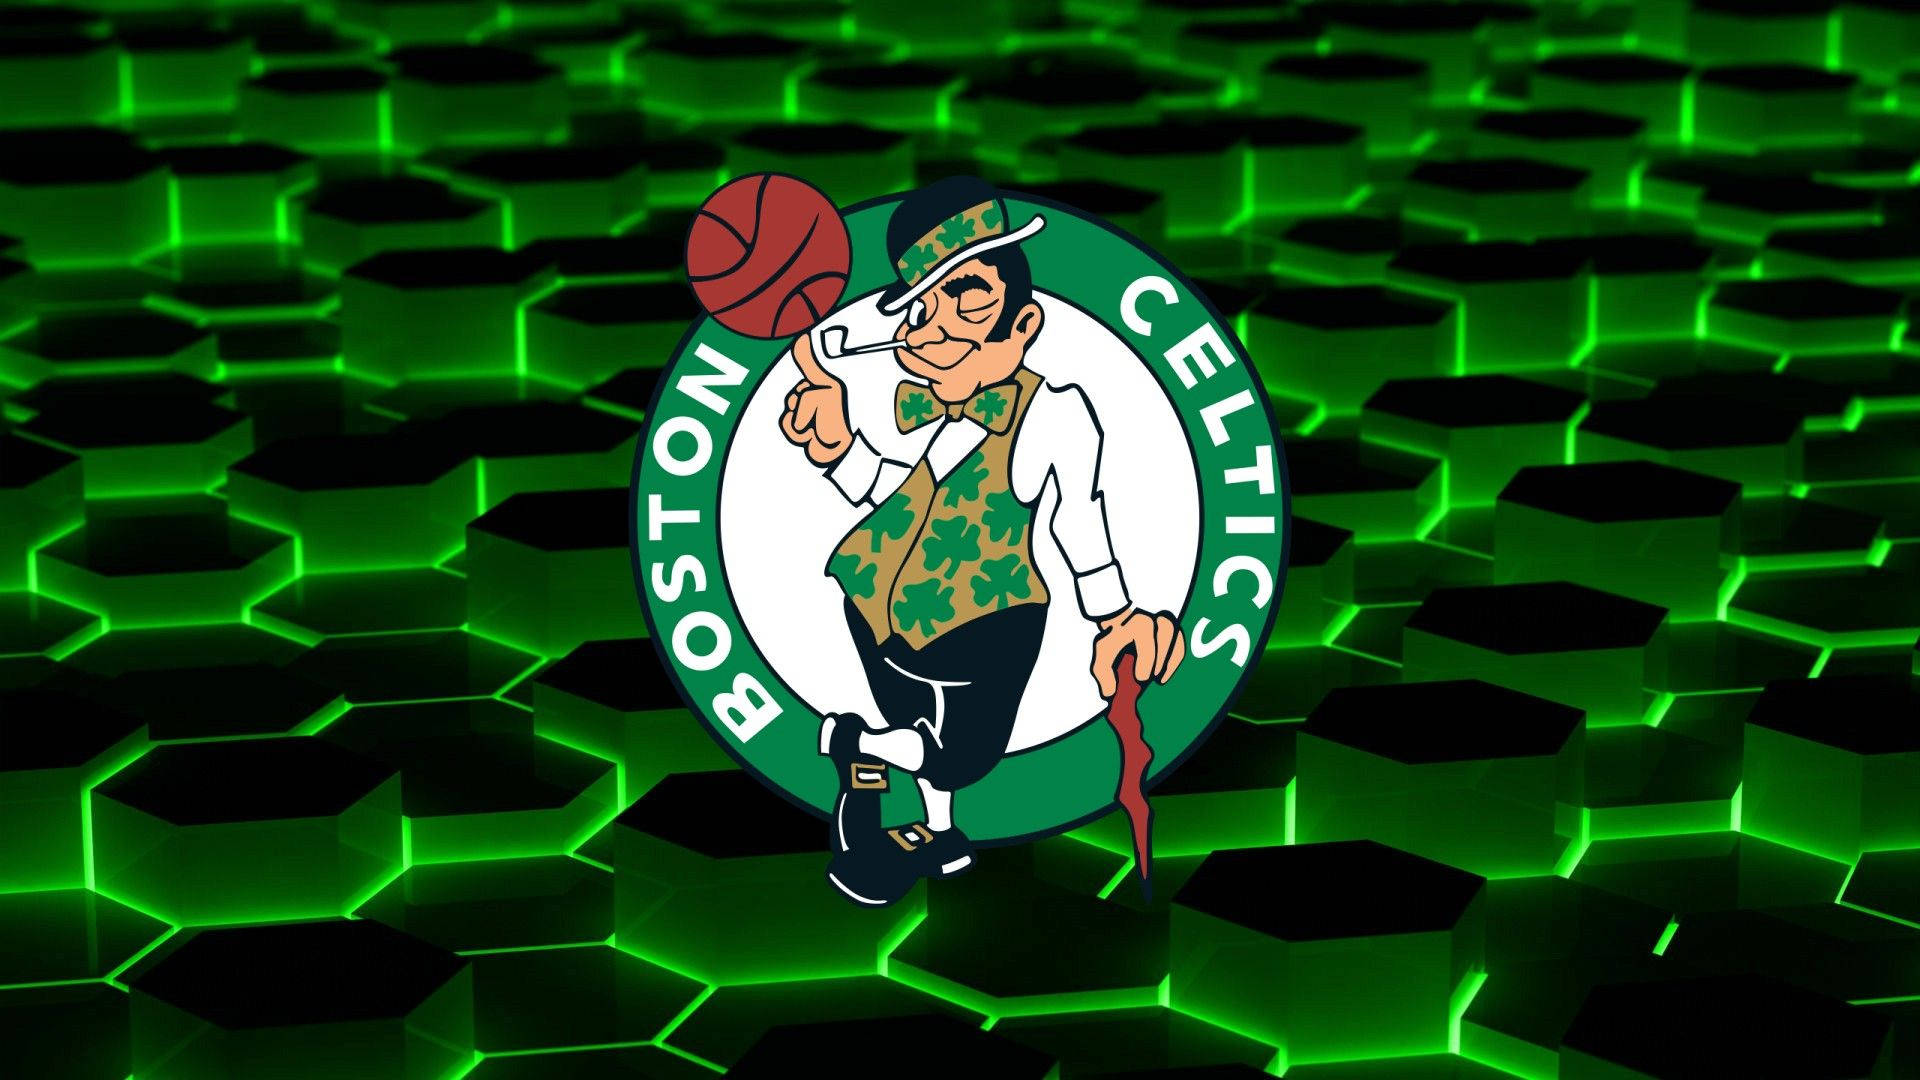 Free Boston Celtics Wallpaper Downloads, Boston Celtics Wallpaper for FREE